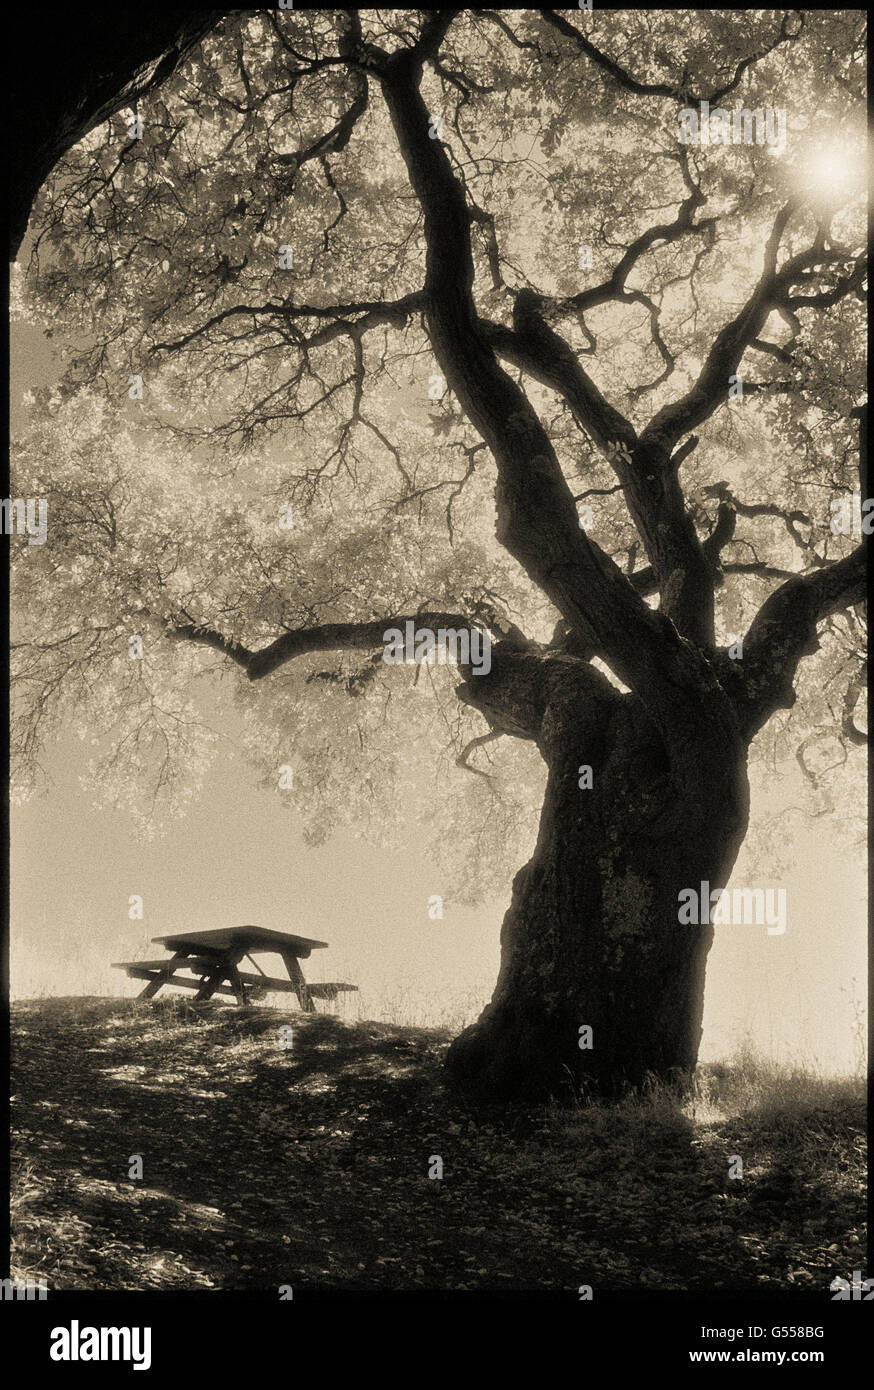 Coast Live Oak (Quercus agrifolia), picnic table, and sun, Sobrante Ridge Regional Preserve, Contra Costa County, CA, USA Stock Photo